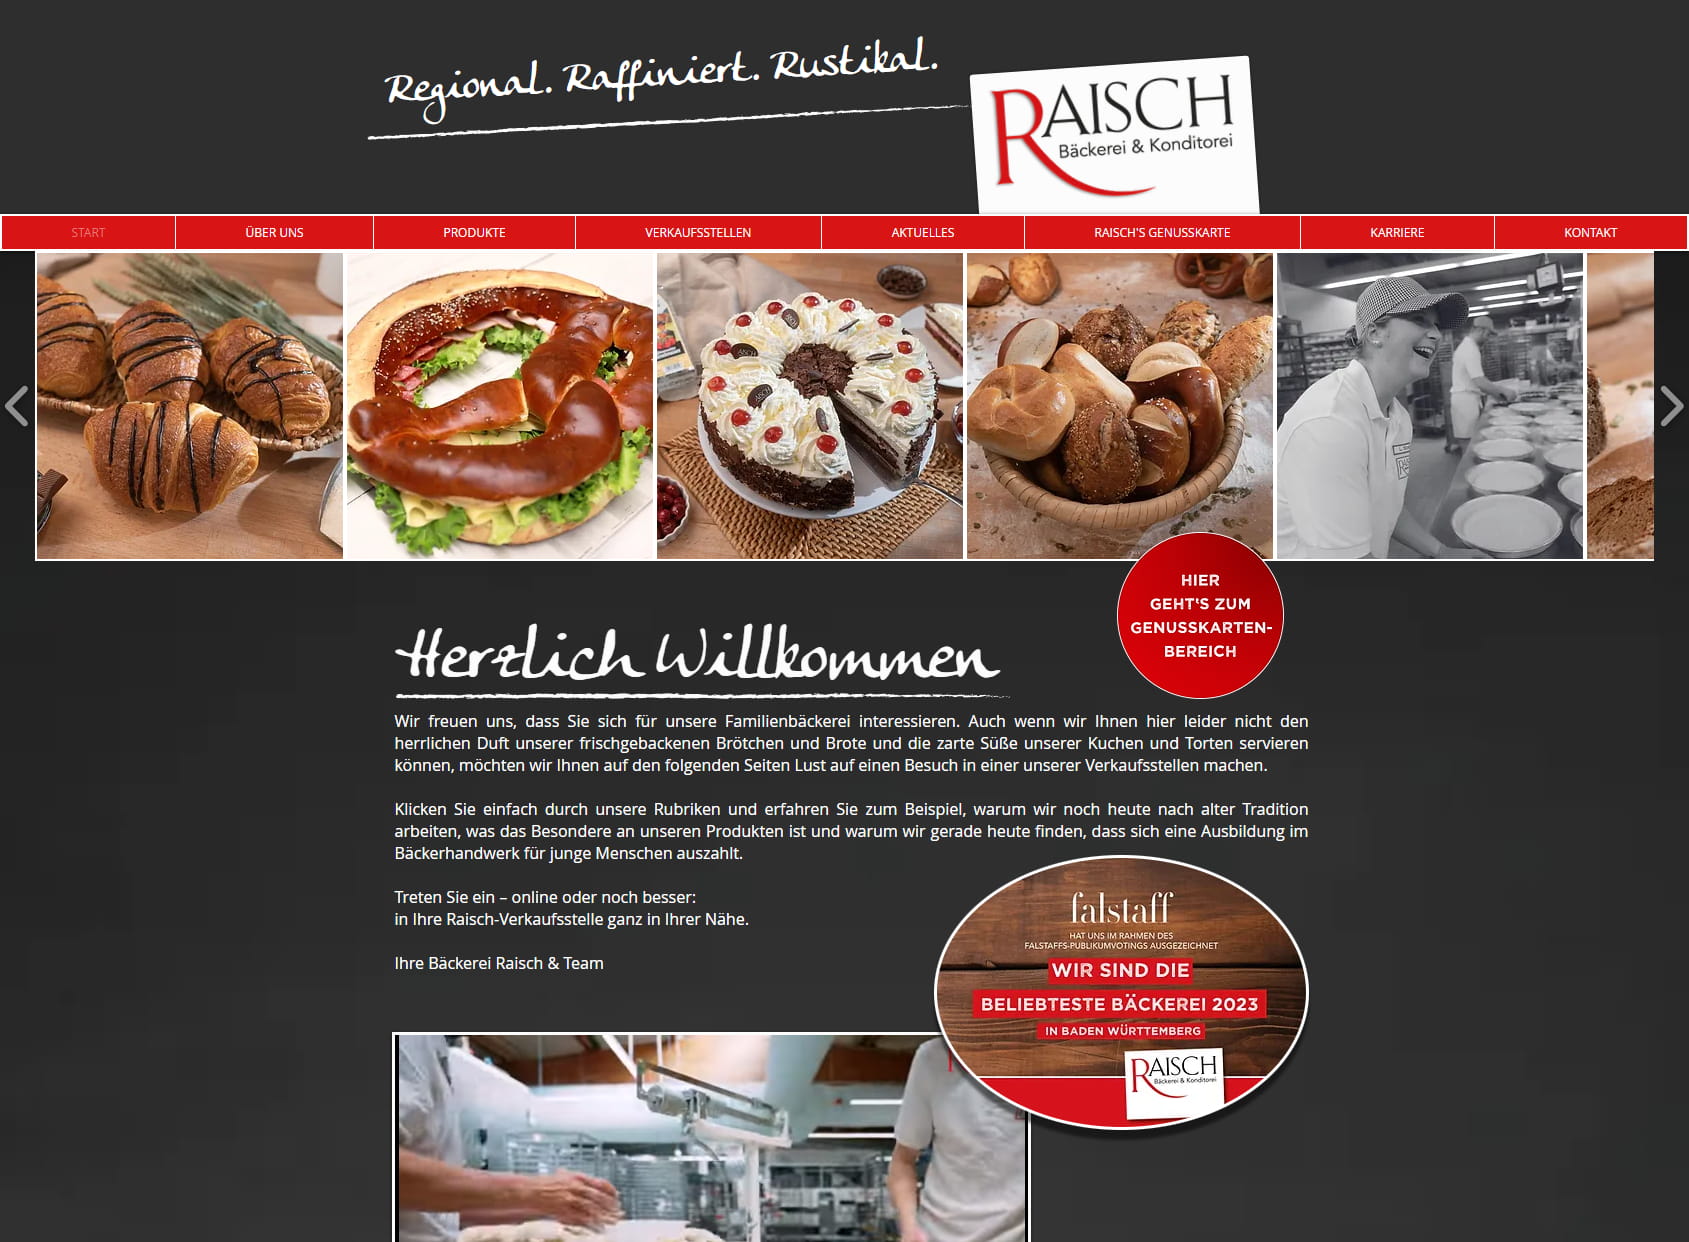 Bäckerei & Konditorei Raisch - Pforzheim Wilferdinger Höhe